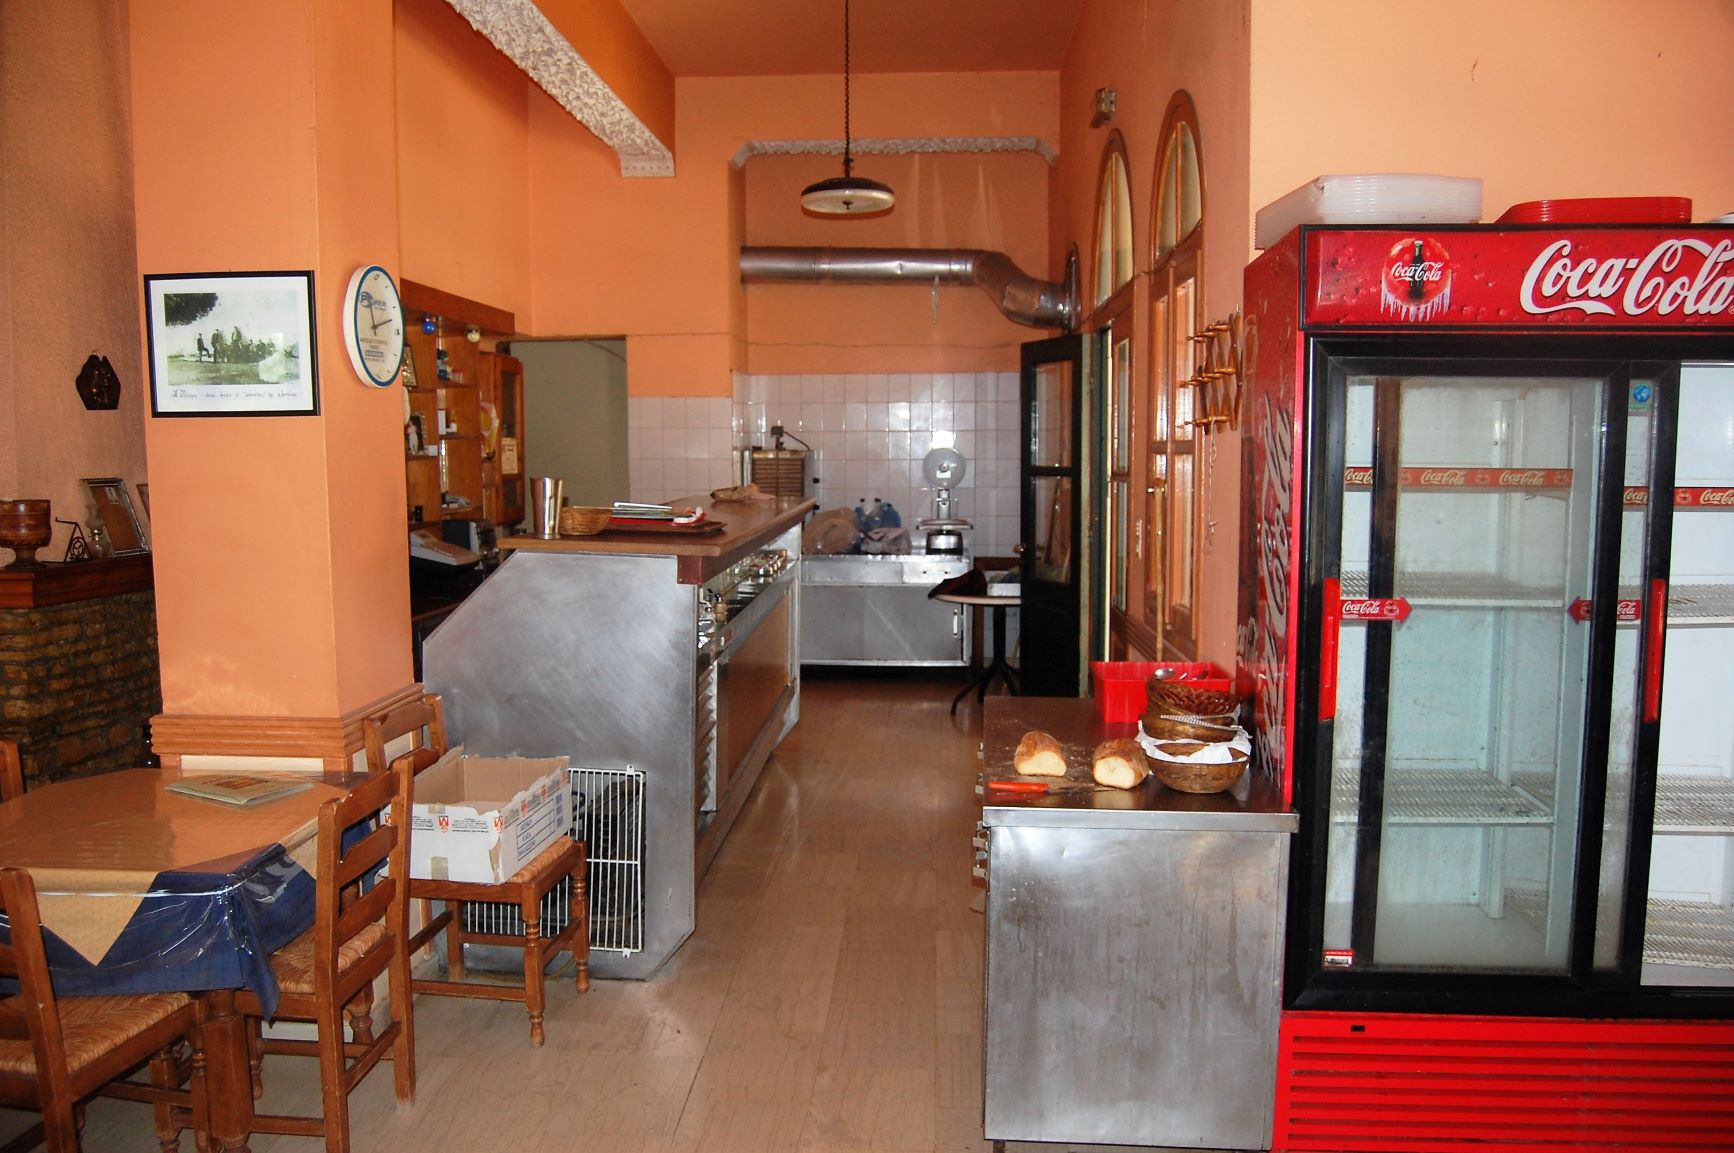 Εσωτερικό εστιατόριο προς πώληση στην Ιθάκη, Σταύρος